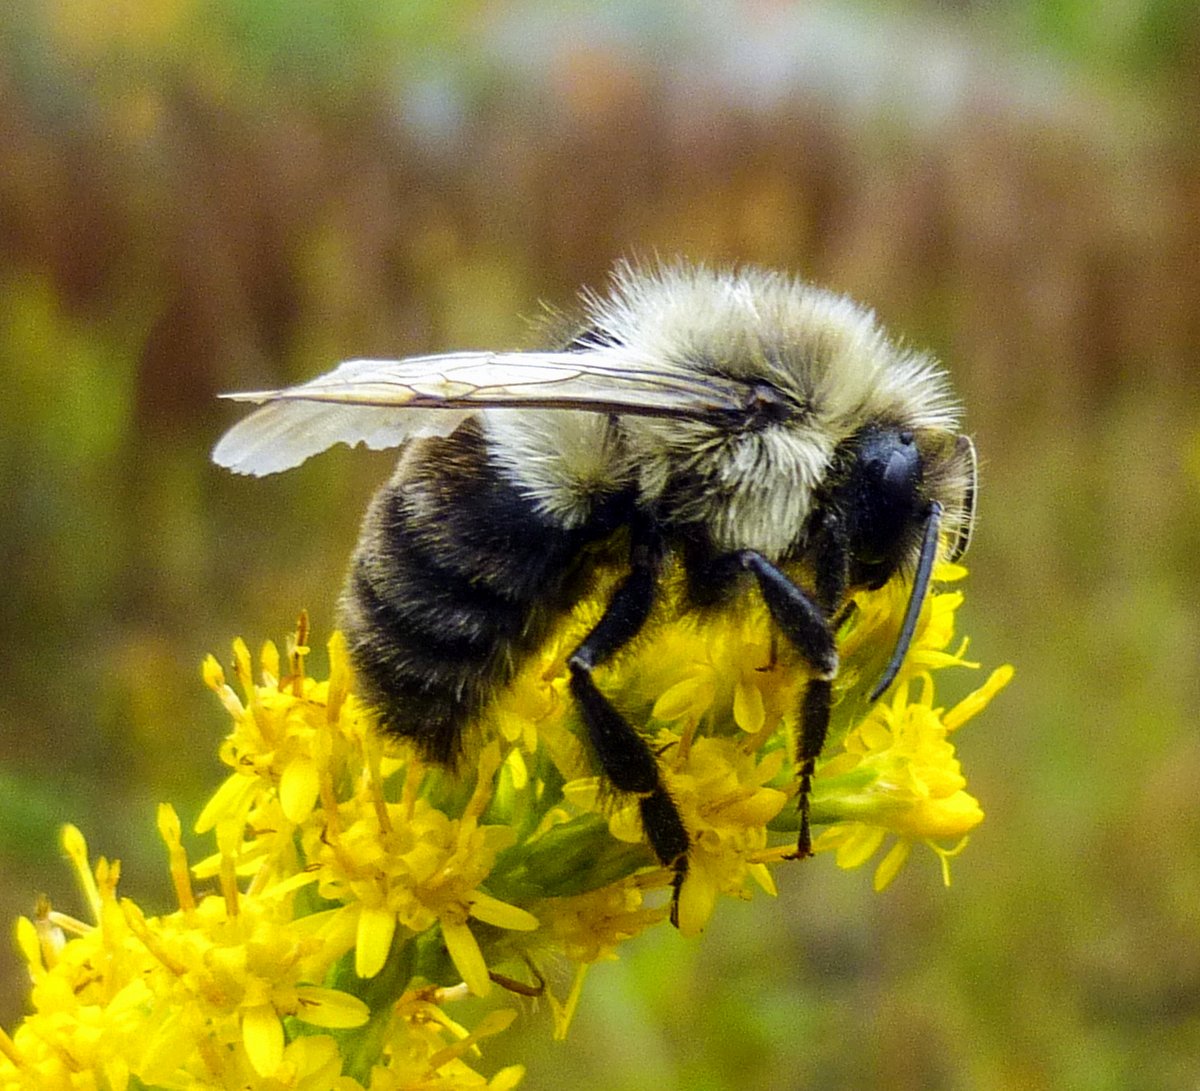 1. Bumblebee on Goldenrod